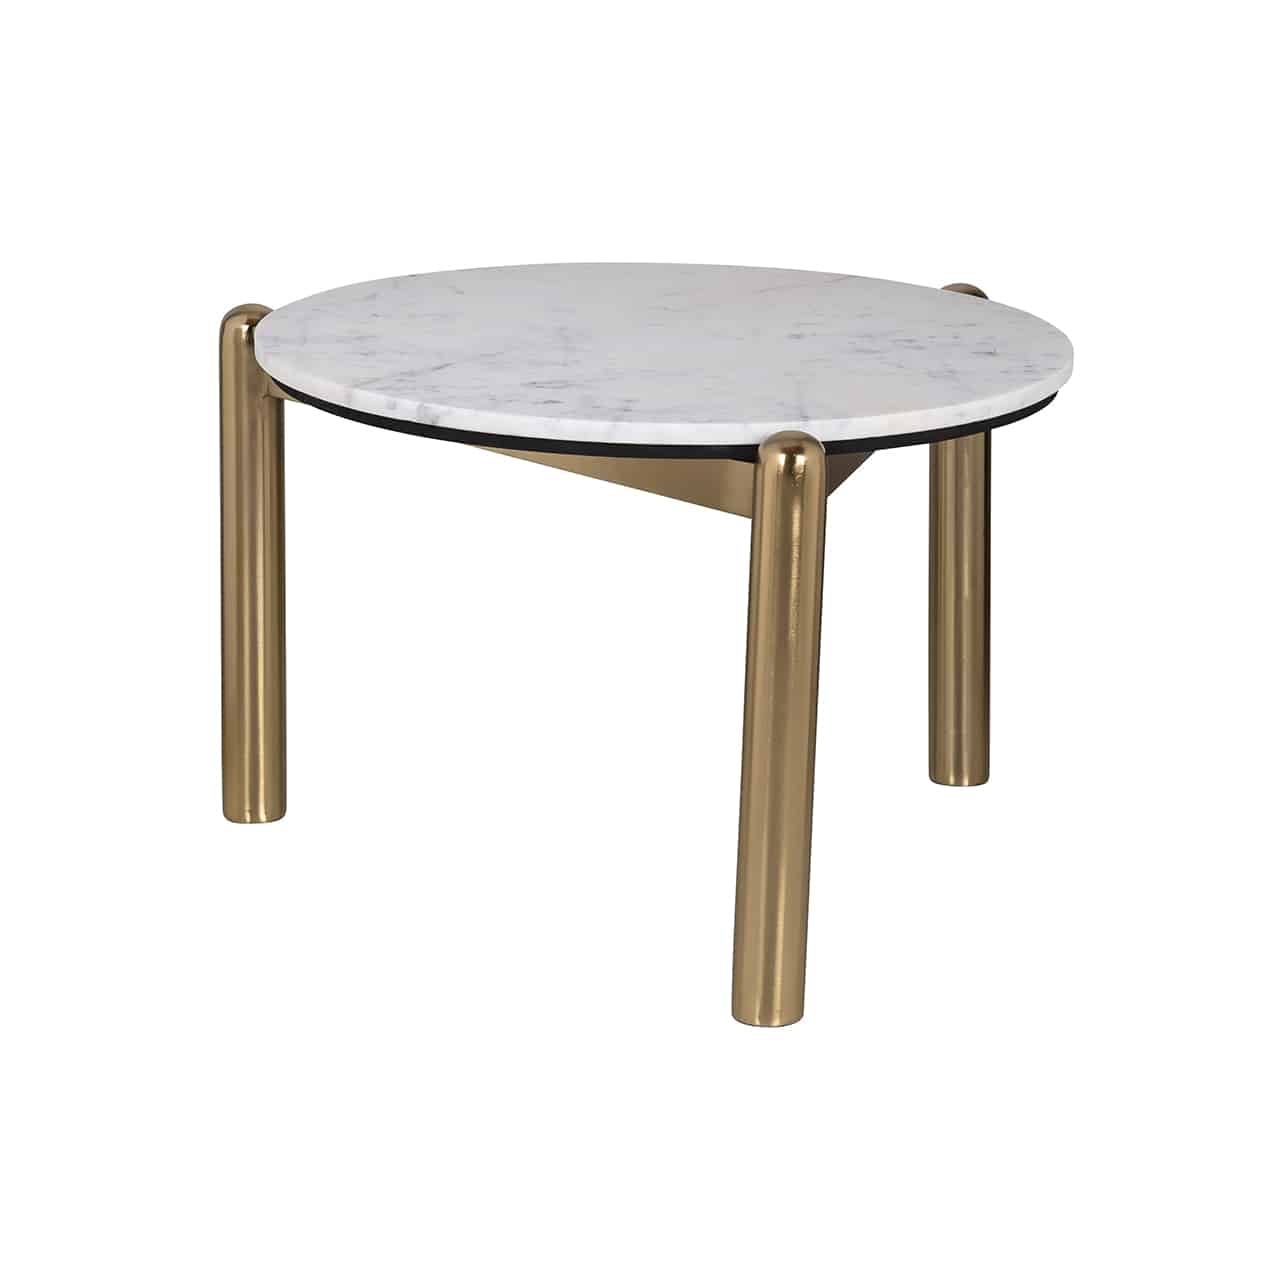 Couchtisch bestehend aus einem Gestell aus goldenem Metall mit drei kompakten runden Beinen mit gewölbten Abschluss; darauf eine Tischplatte aus weißem Marmor.